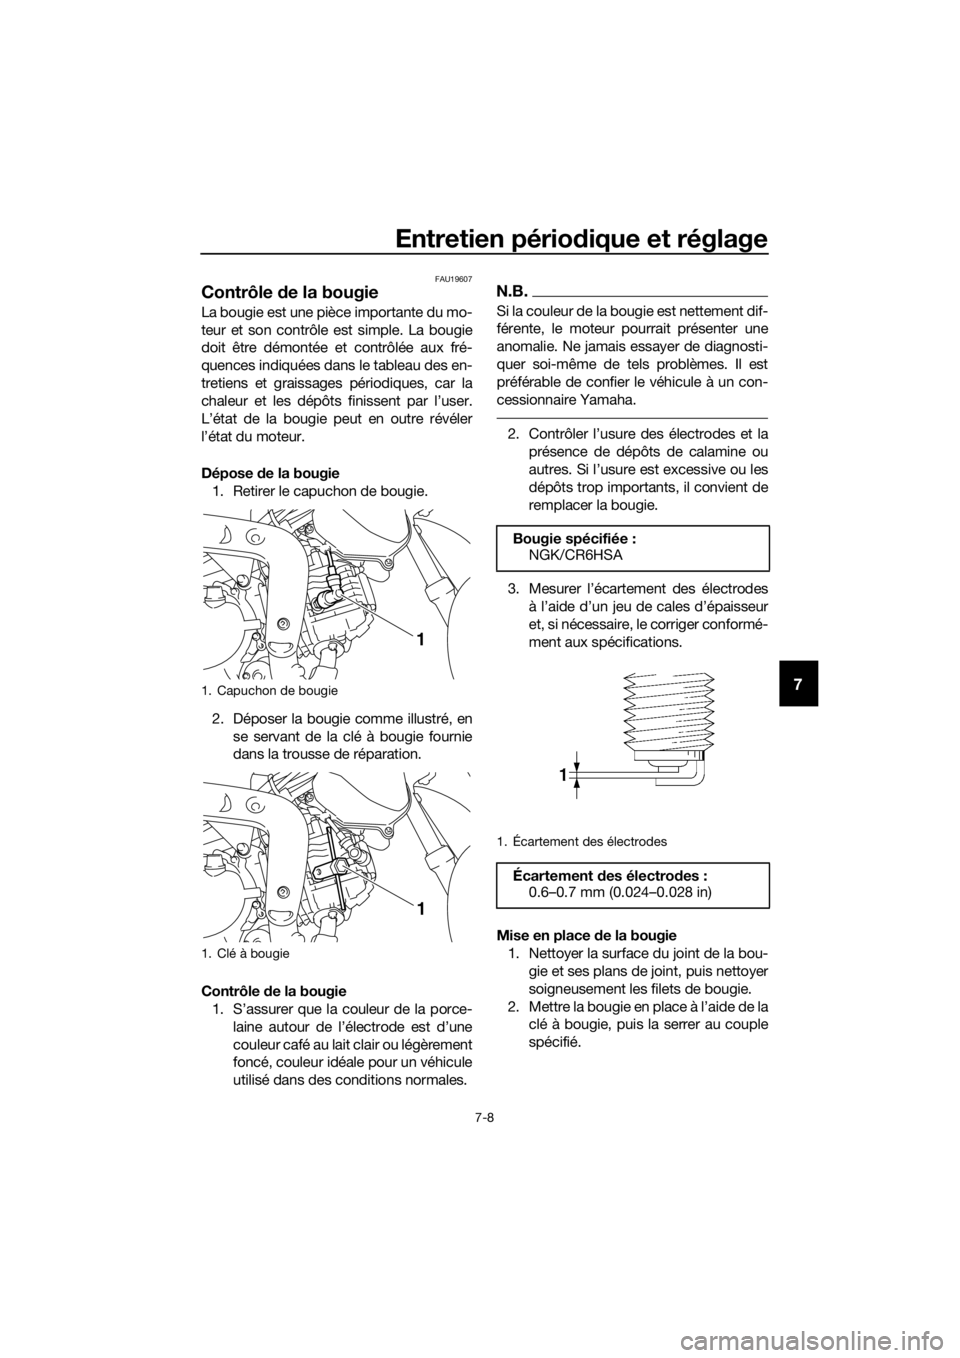 YAMAHA TT-R110E 2019  Notices Demploi (in French) Entretien périodique et réglage
7-8
7
FAU19607
Contrôle de la bougie
La bougie est une pièce importante du mo-
teur et son contrôle est simple. La bougie
doit être démontée et contrôlée aux 